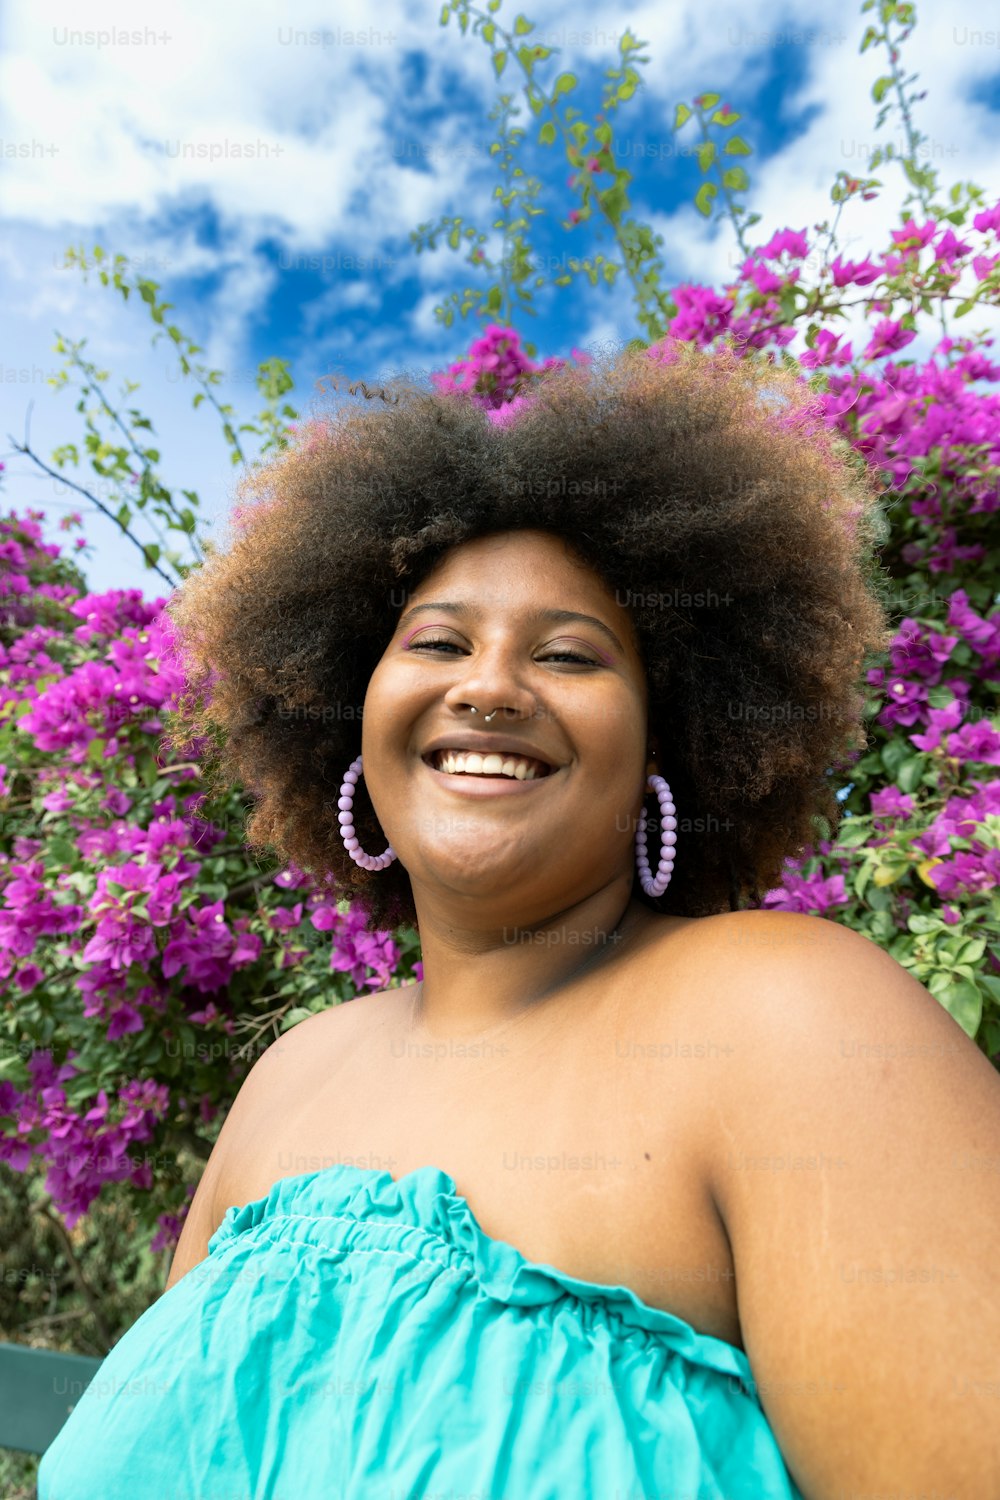 Une femme avec un afro sourit devant des fleurs violettes